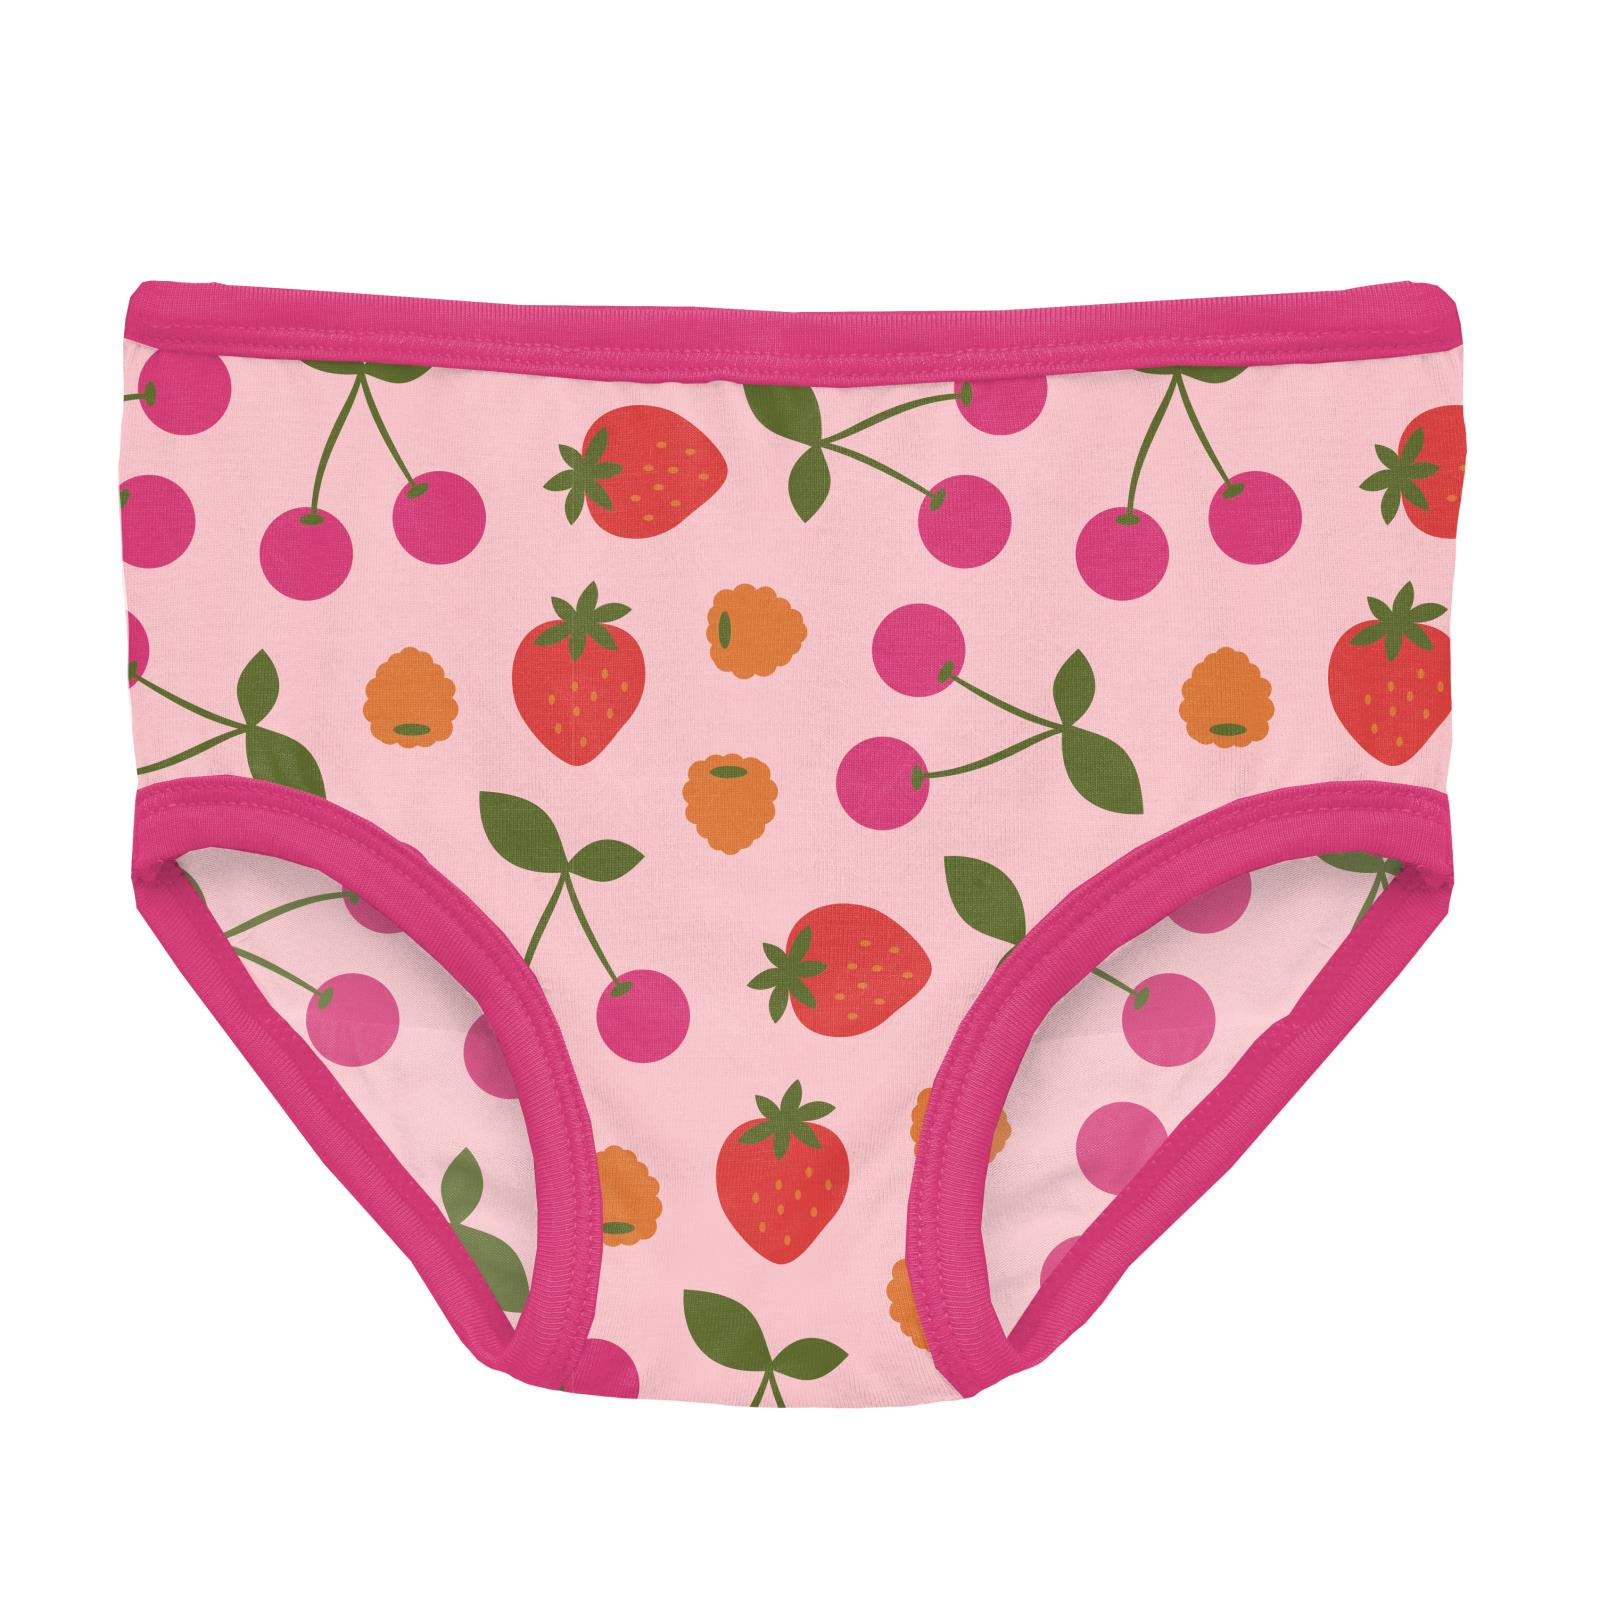 Kickee Pants Bamboo Girls Underwear - Calypso Pretzel Pup